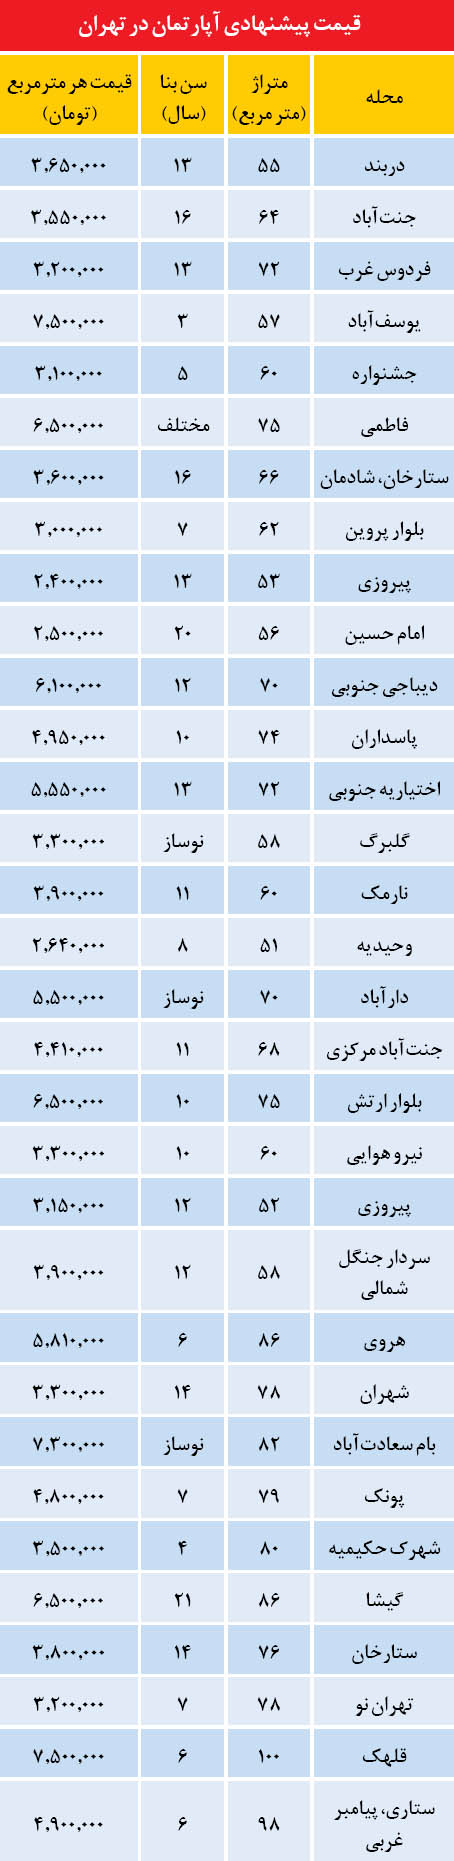 ارزان ترین های بازار مسکن تهران (جدول)